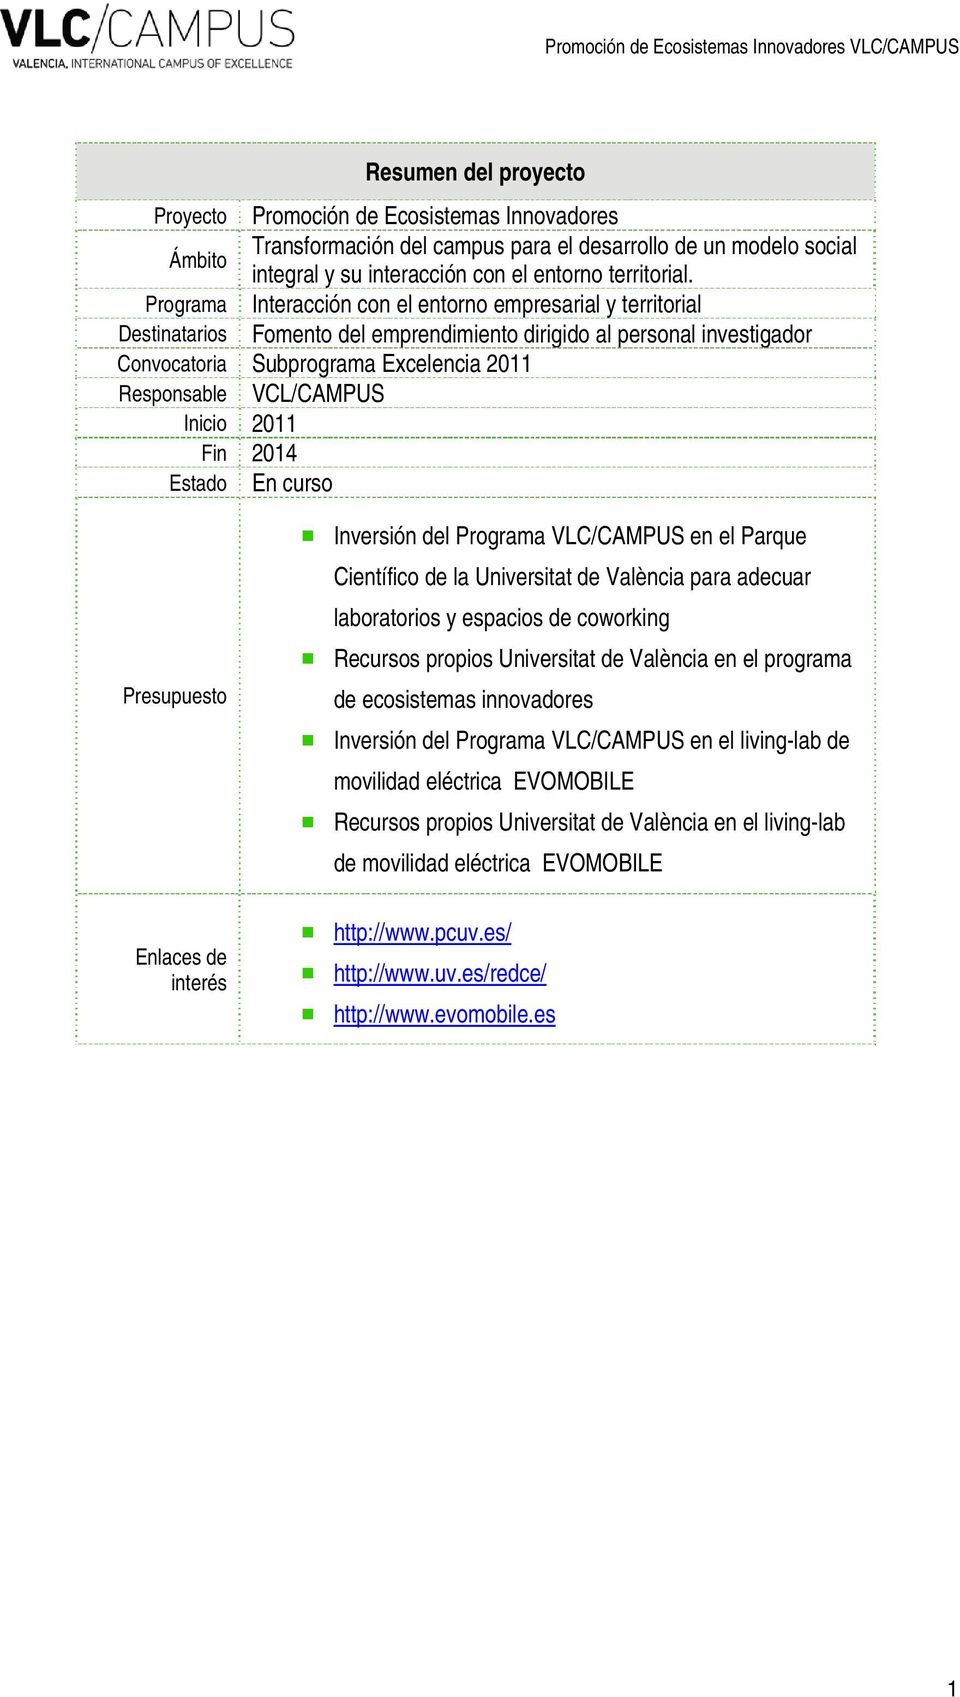 VCL/CAMPUS Inicio 2011 Fin 2014 Estado En curso Presupuesto Inversión del Programa VLC/CAMPUS en el Parque Científico de la Universitat de València para adecuar laboratorios y espacios de coworking